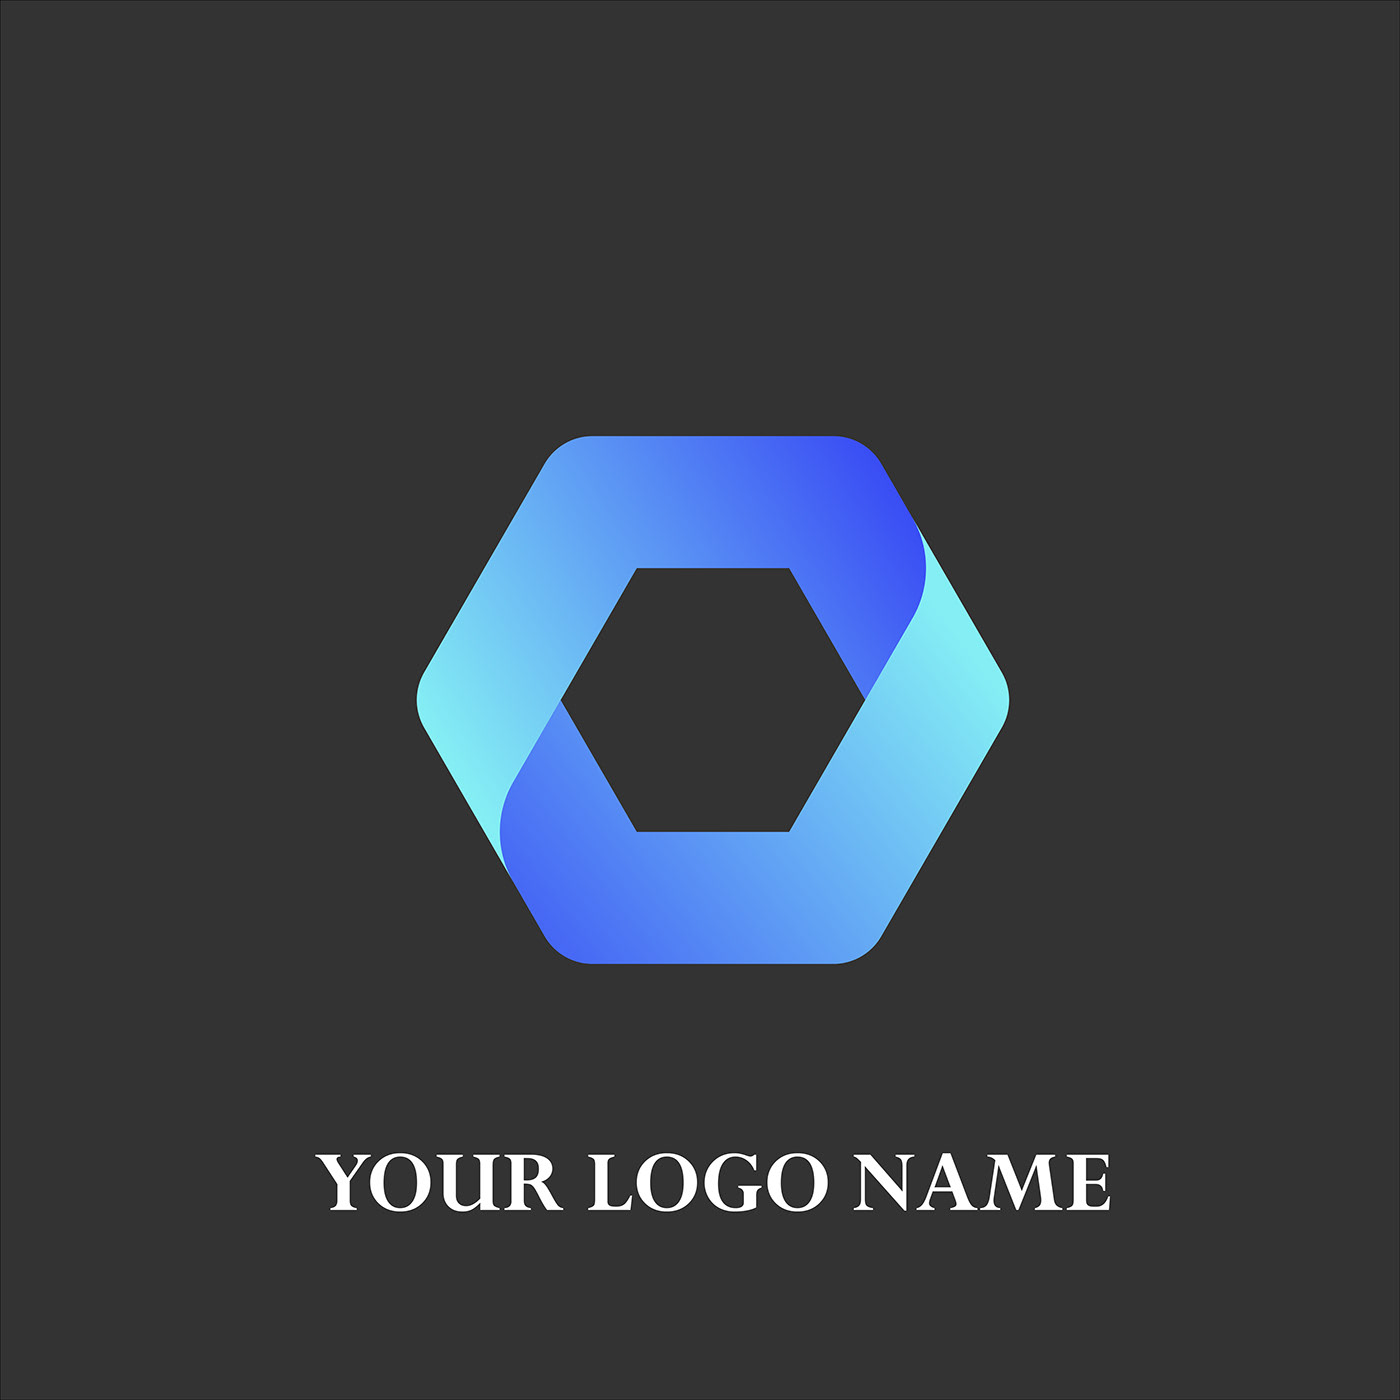 adobe illustrator design logo Logo Design logos Logotype